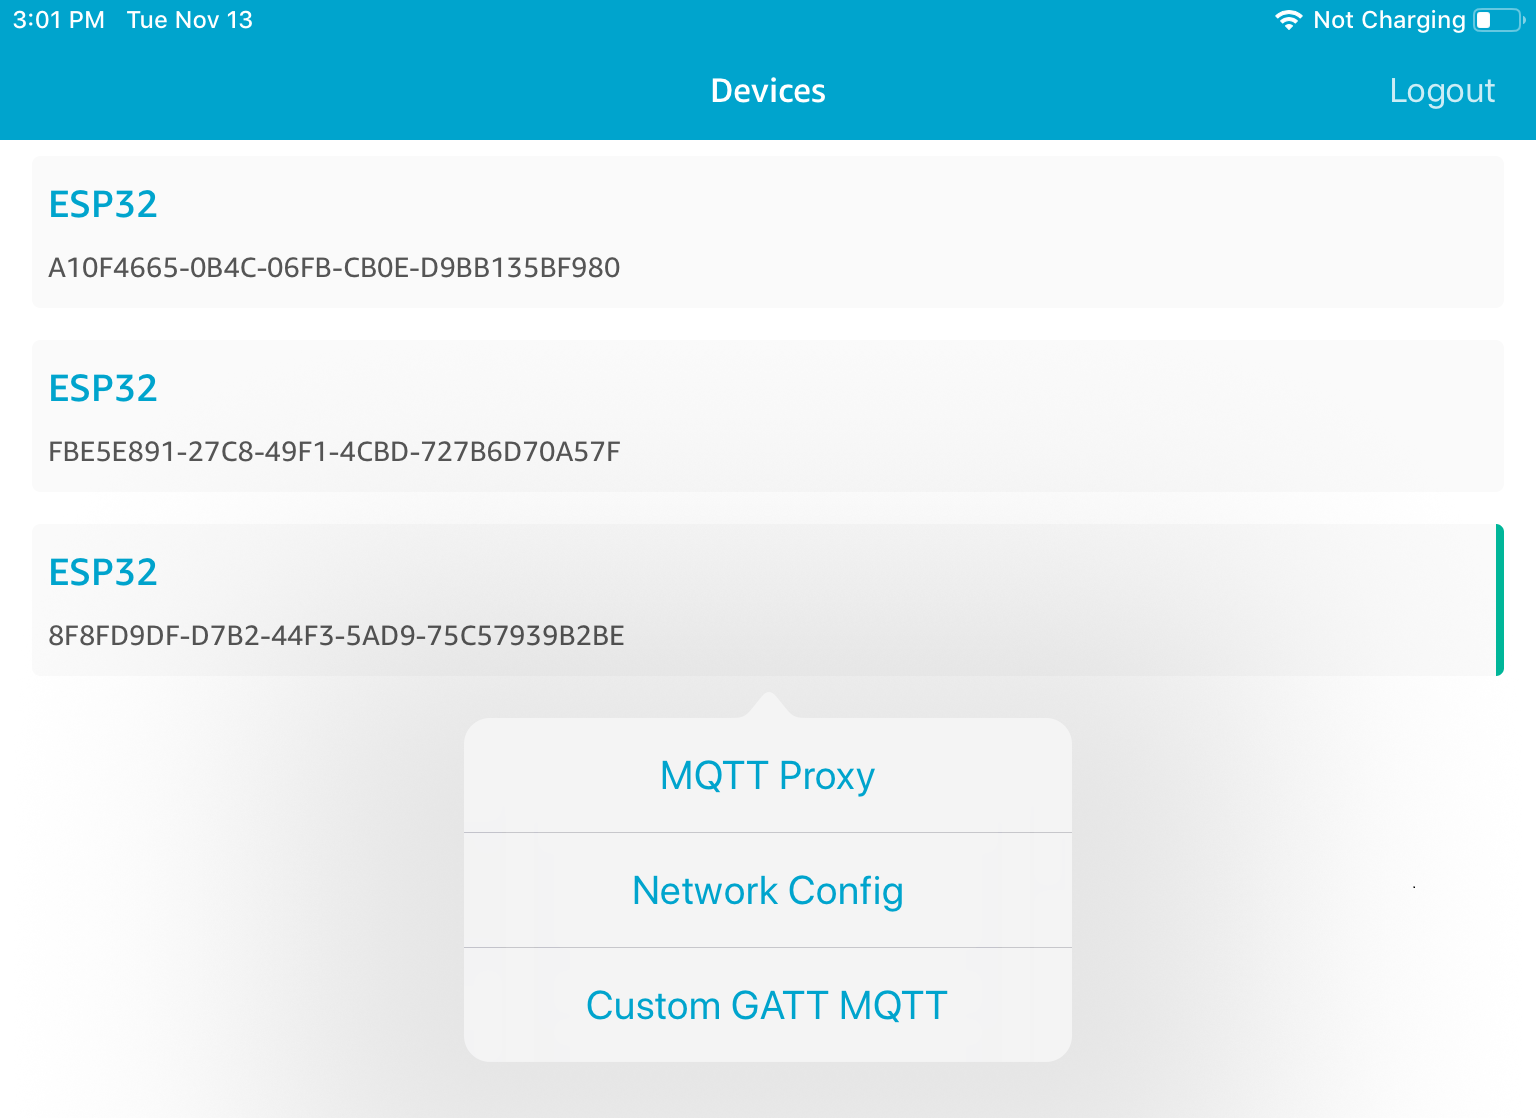 Lista de três IDs de dispositivos ESP32, com as opções MQTT Proxy, Network Config e Custom GATT MQTT abaixo.